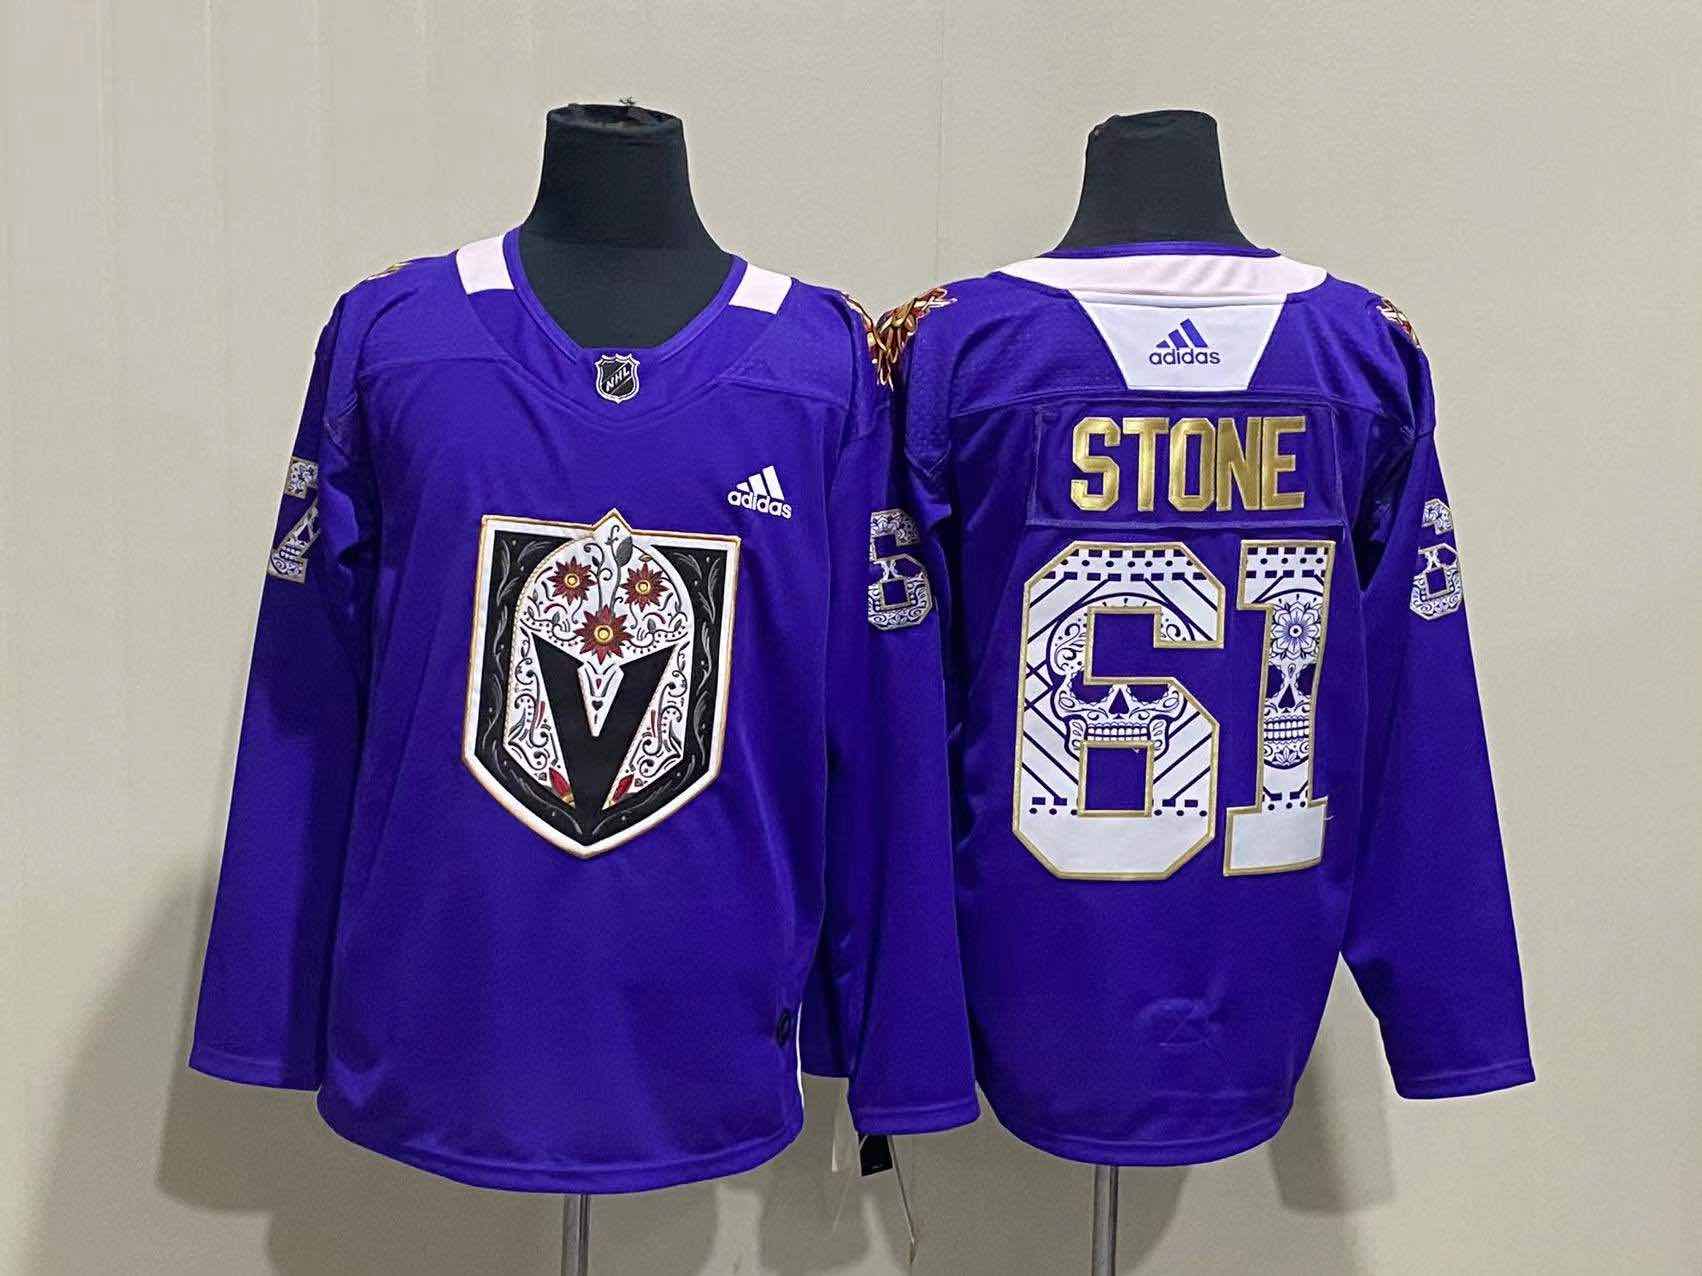 NHL Adidas #61 Stone Purple Jersey